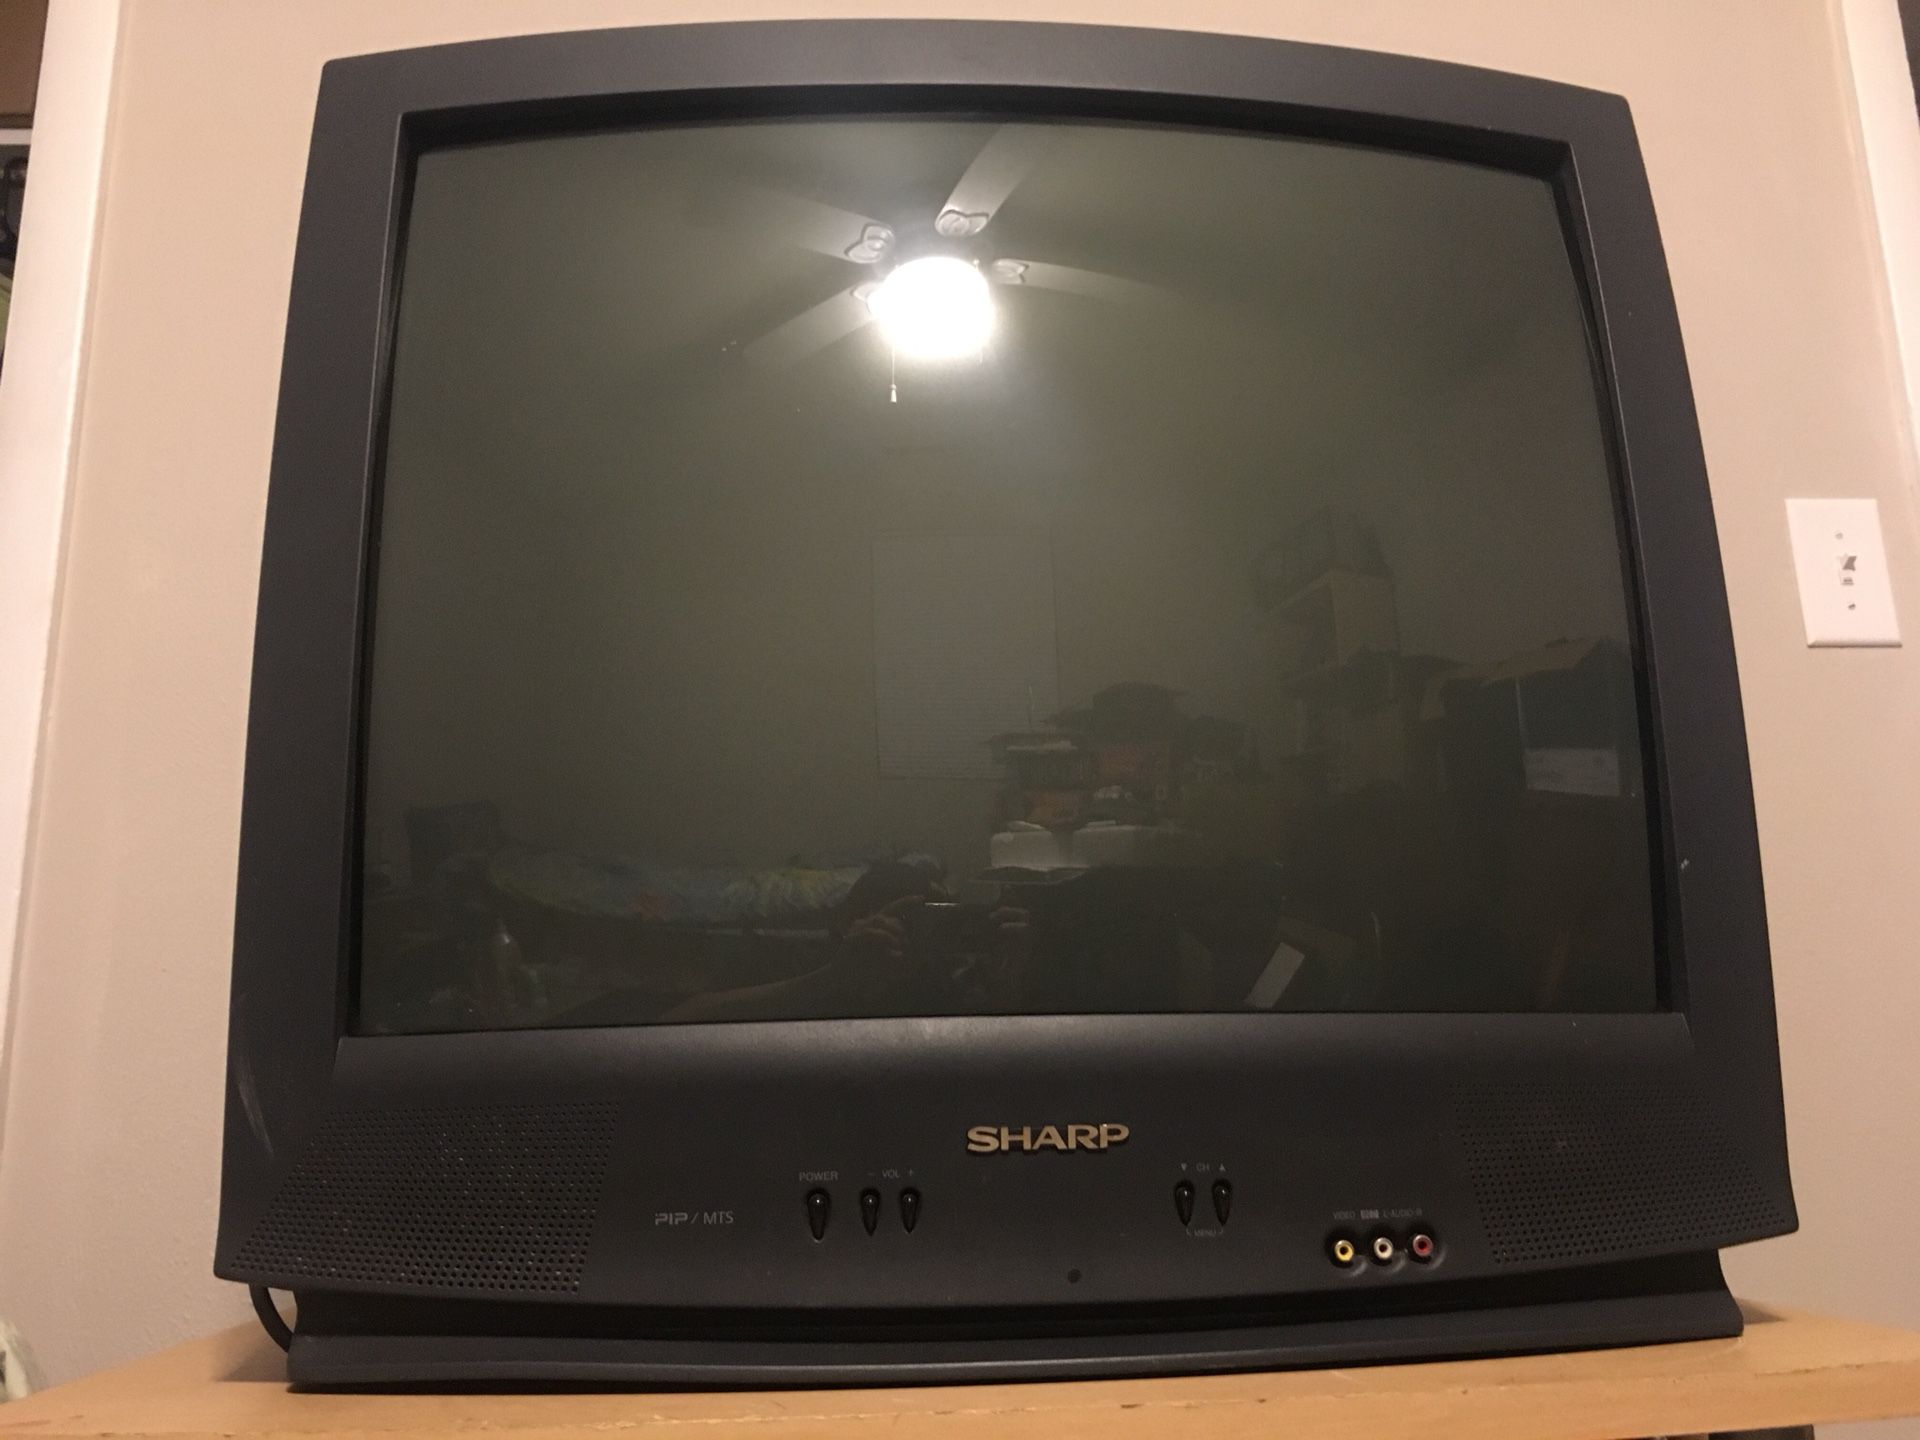 Sharp 27” CRT TV